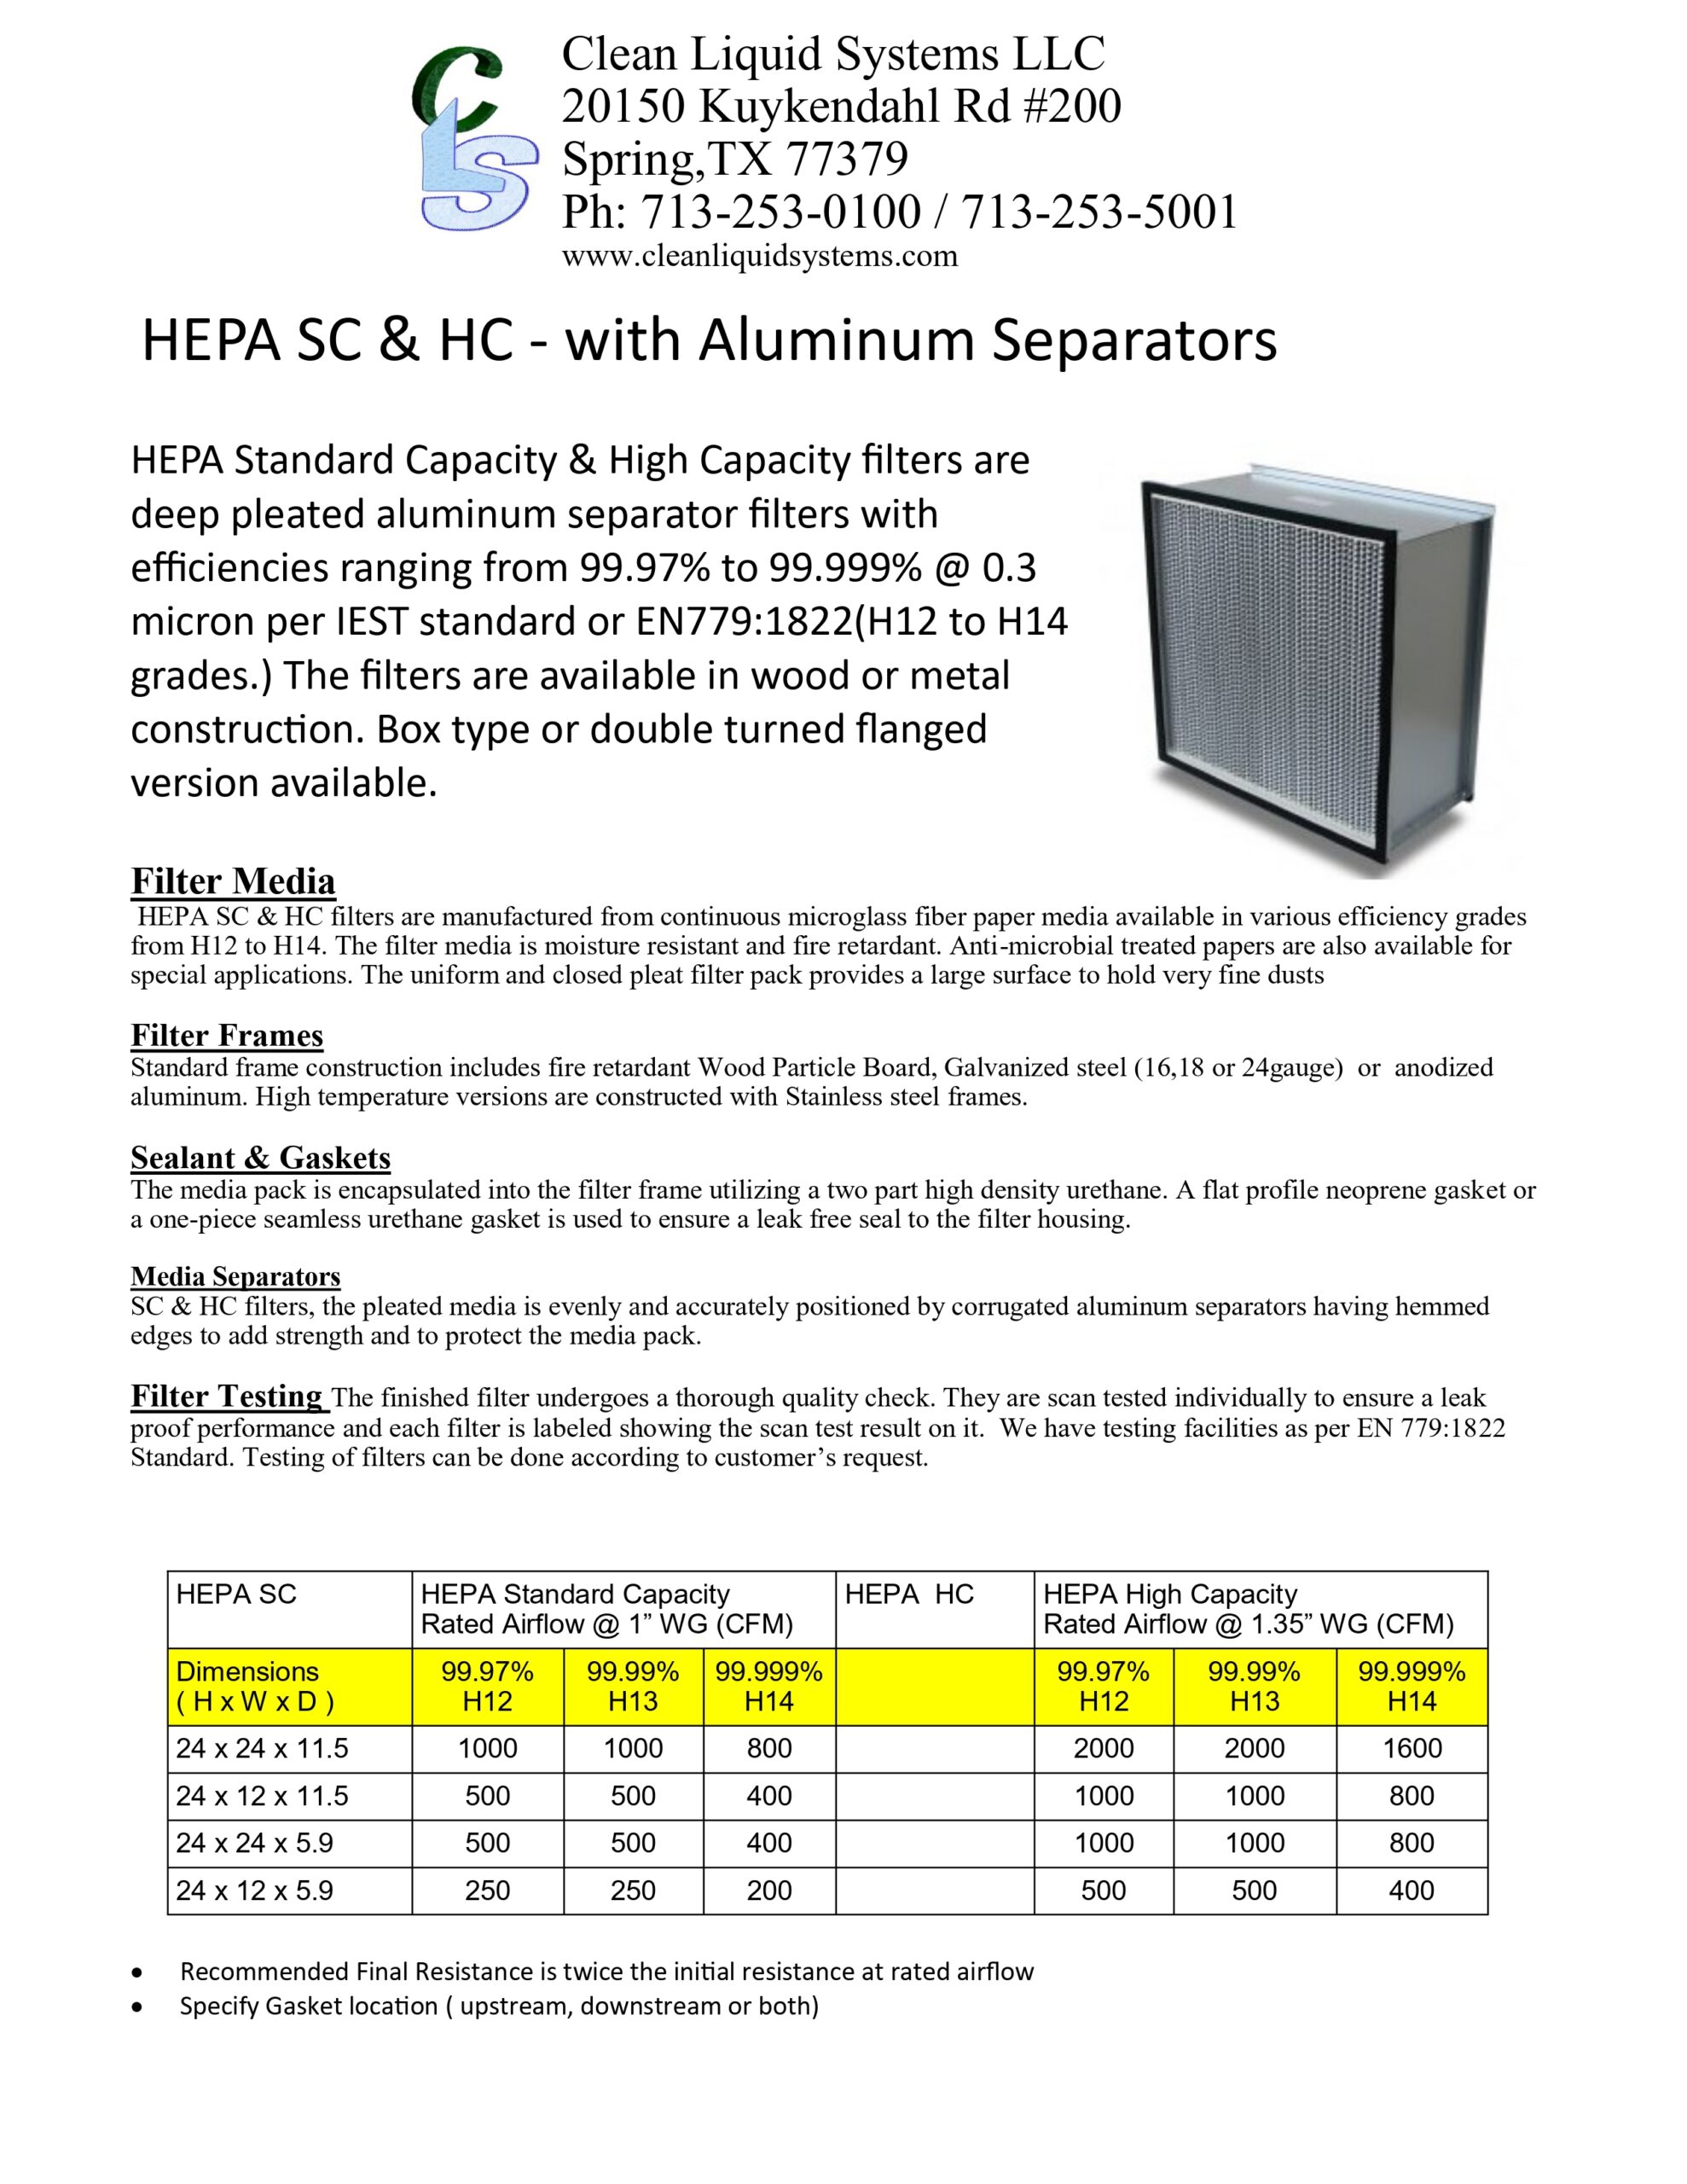 HEPA SC & HC - with Aluminum Separators